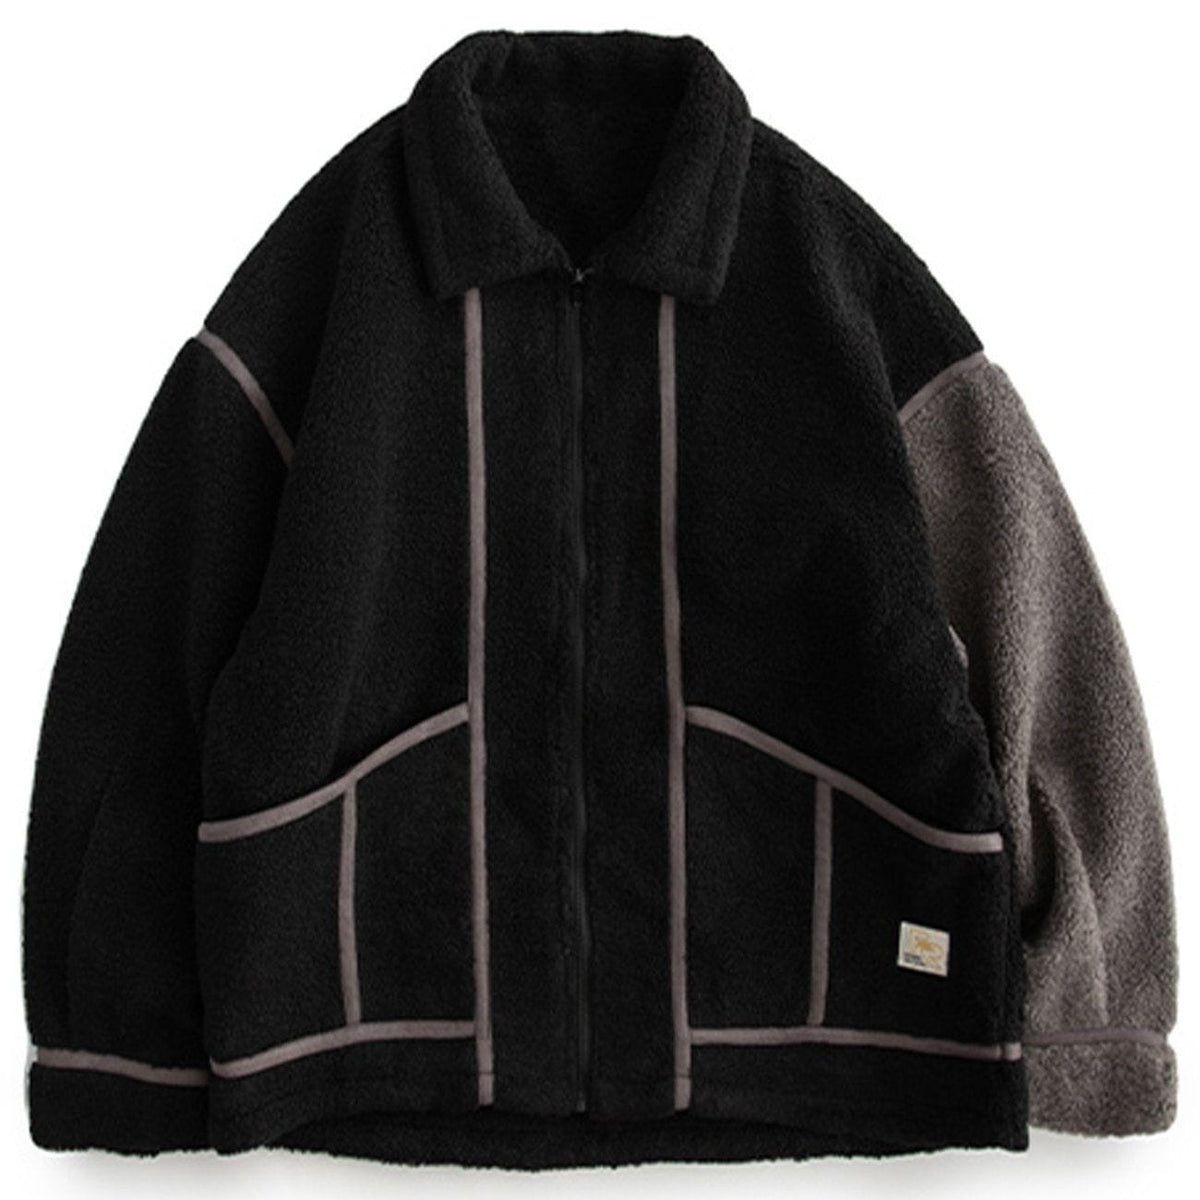 Eprezzy® - Stitching Stripes Sherpa Winter Coat Streetwear Fashion - eprezzy.com